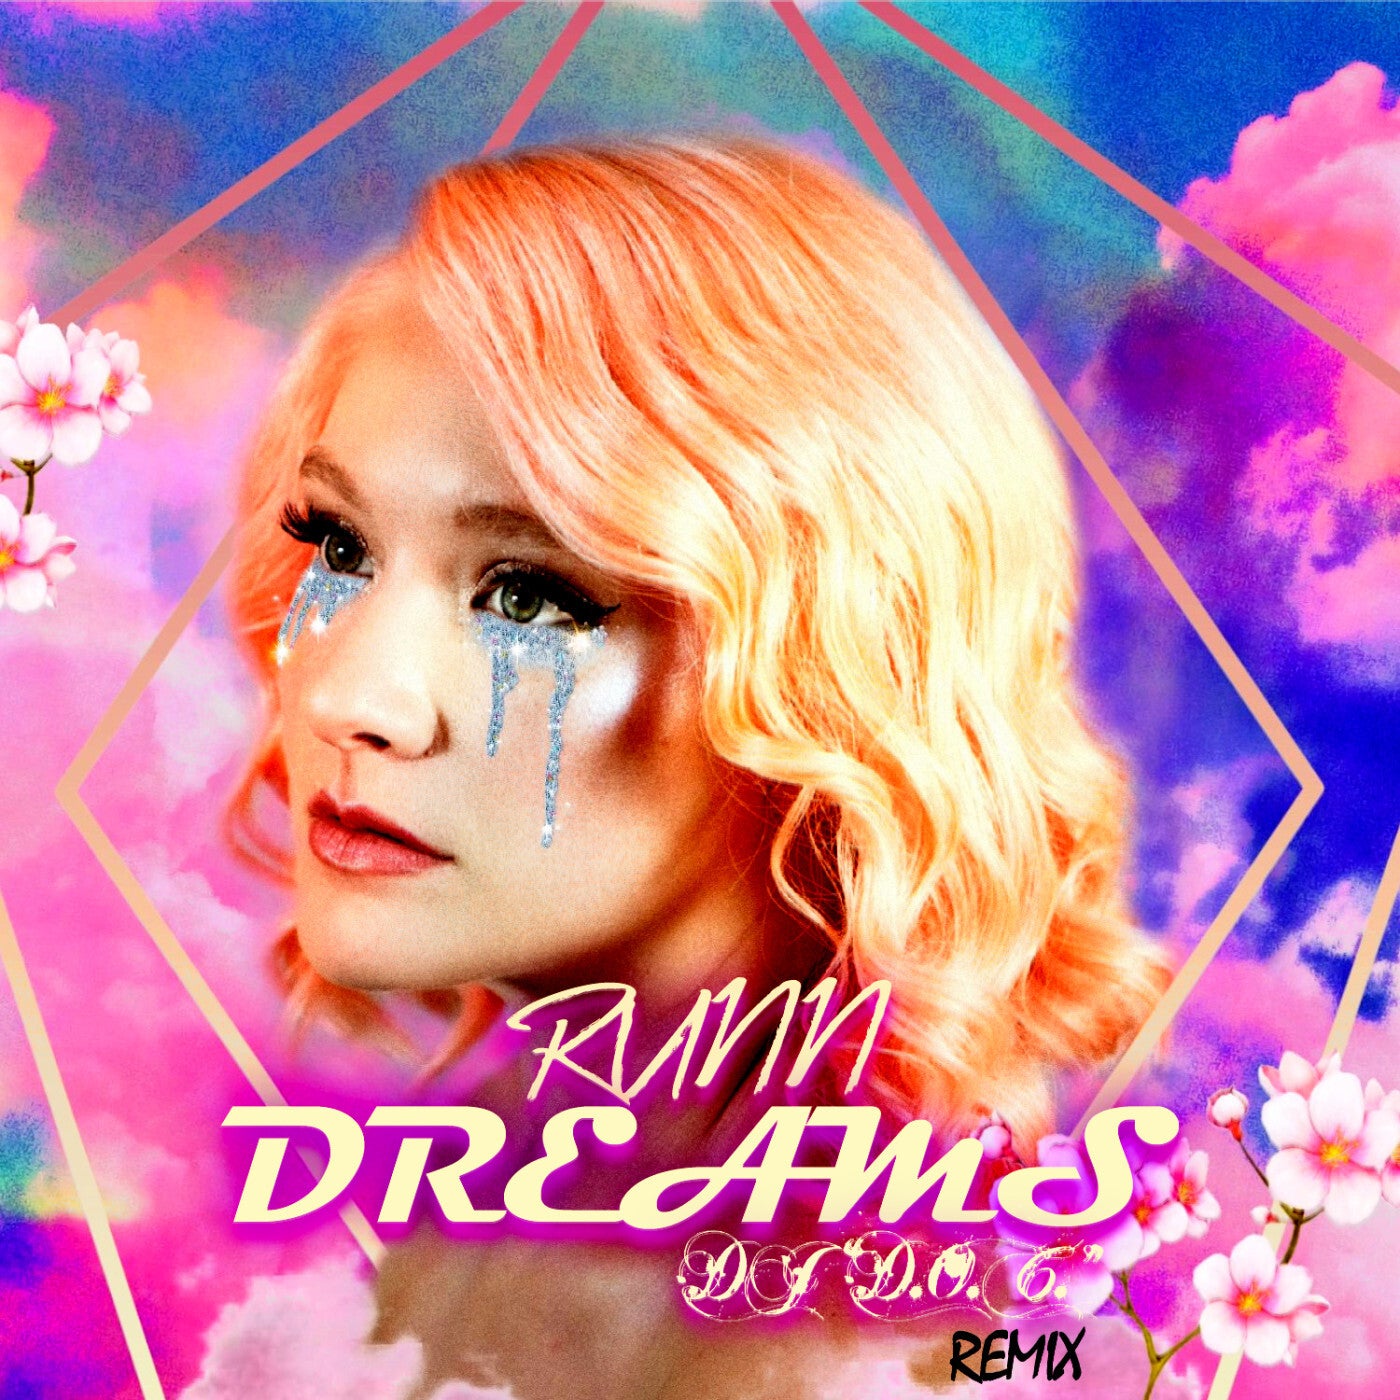 Dreams (DJ "D.O.C." Remix)